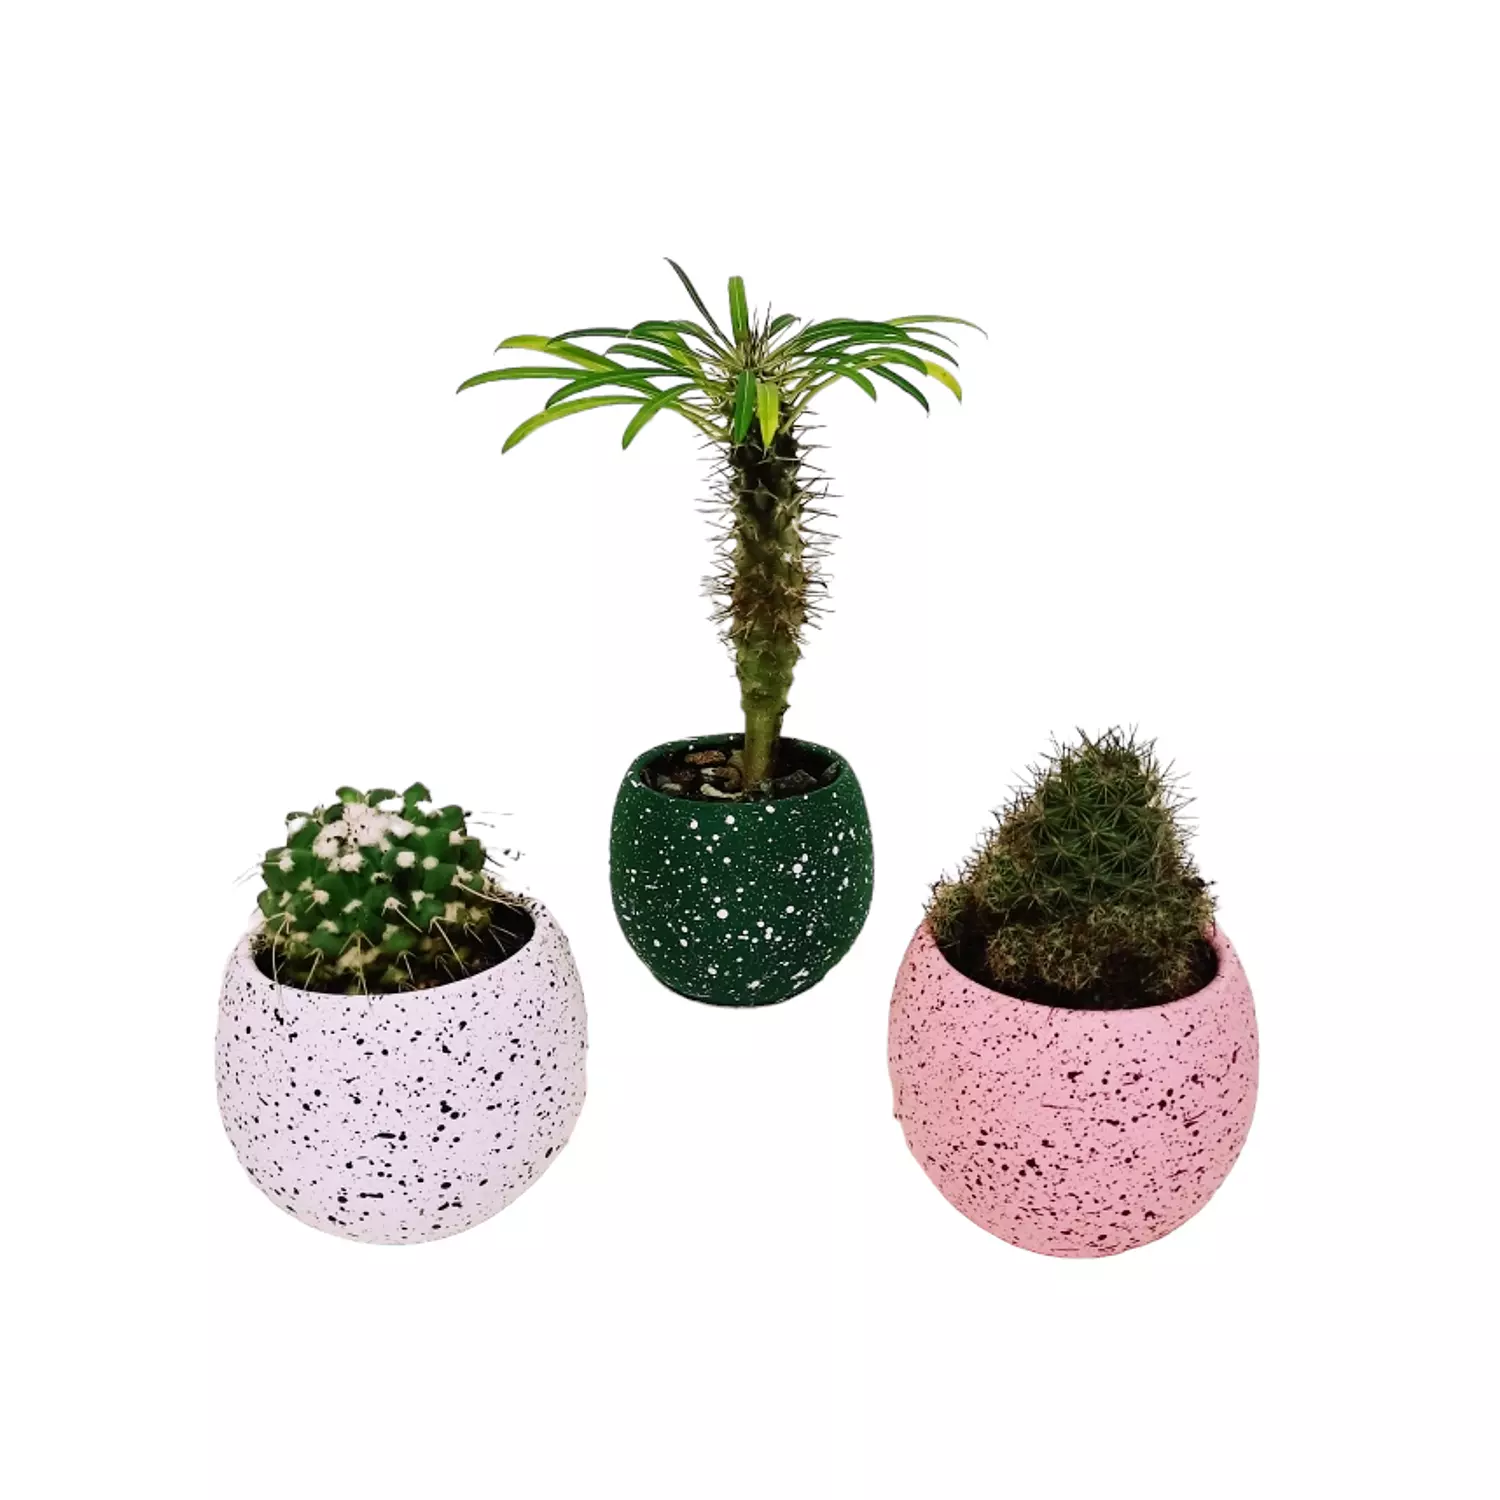 Madagascar palm cactus set hover image